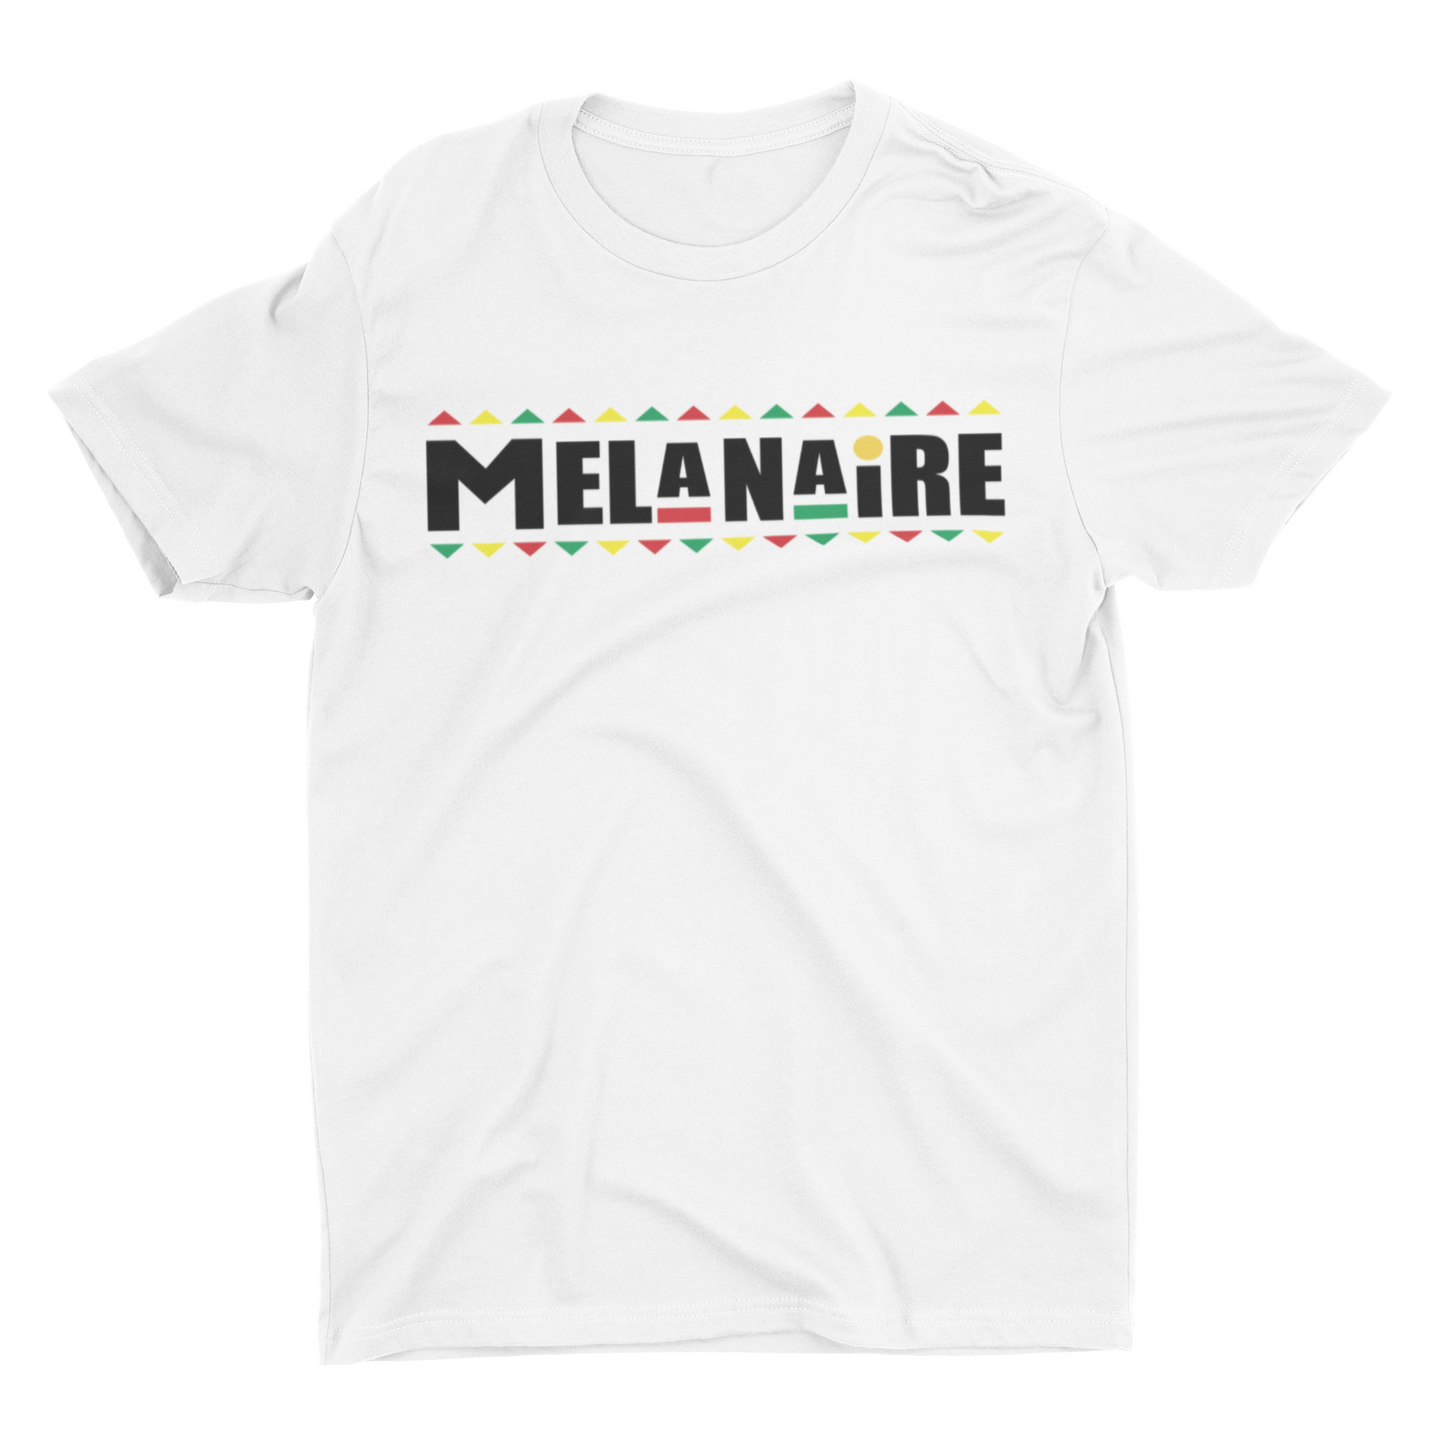 Melanaire Tee - White